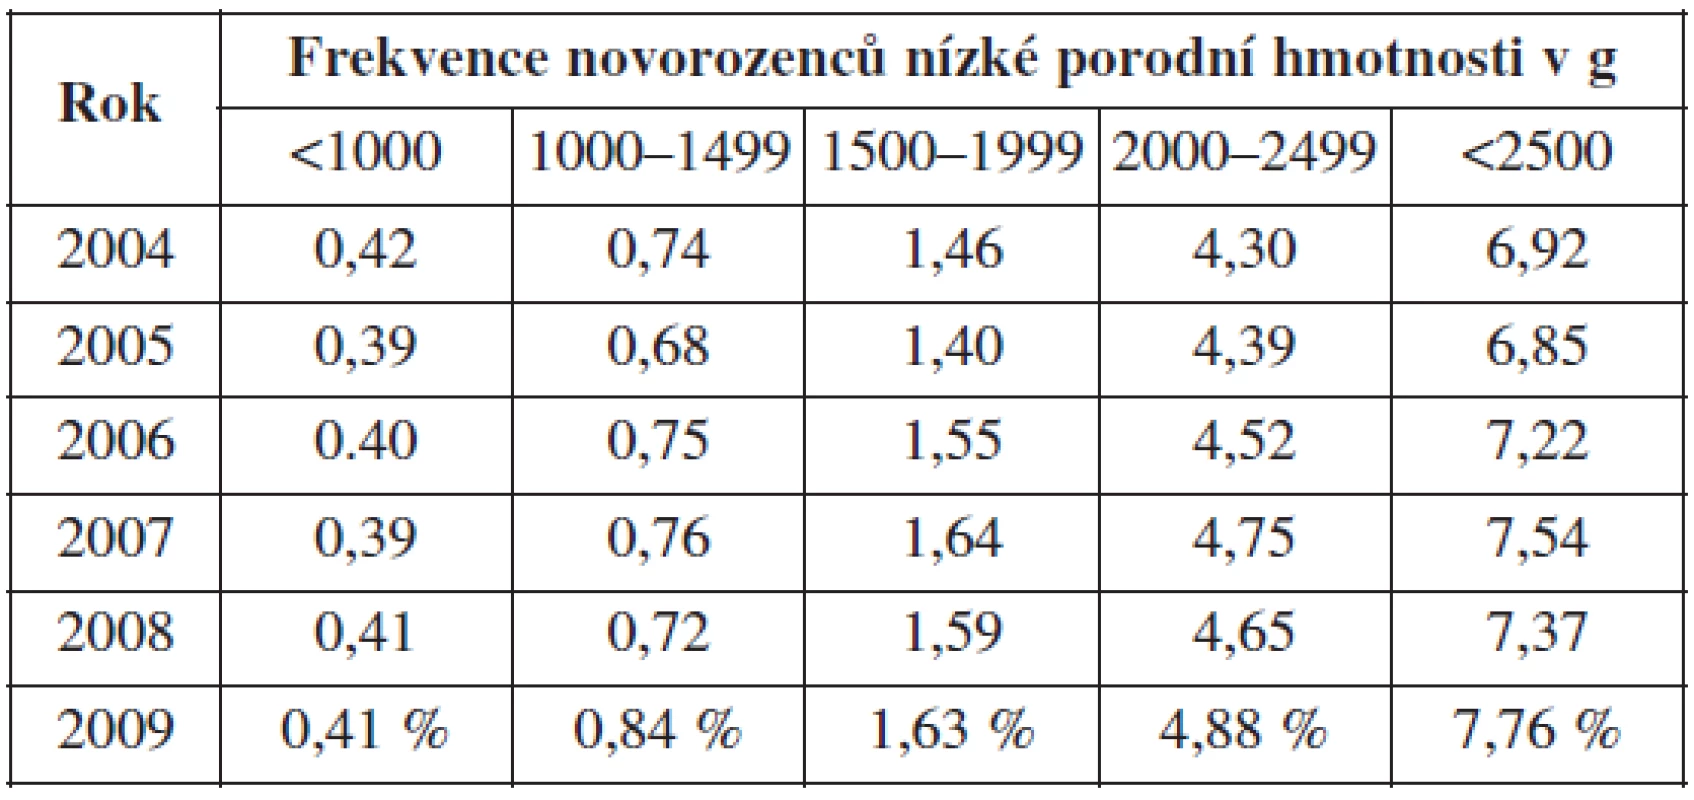 Frekvence novorozenců nízké porodní hmotnosti v ČR v letech 2004–2009